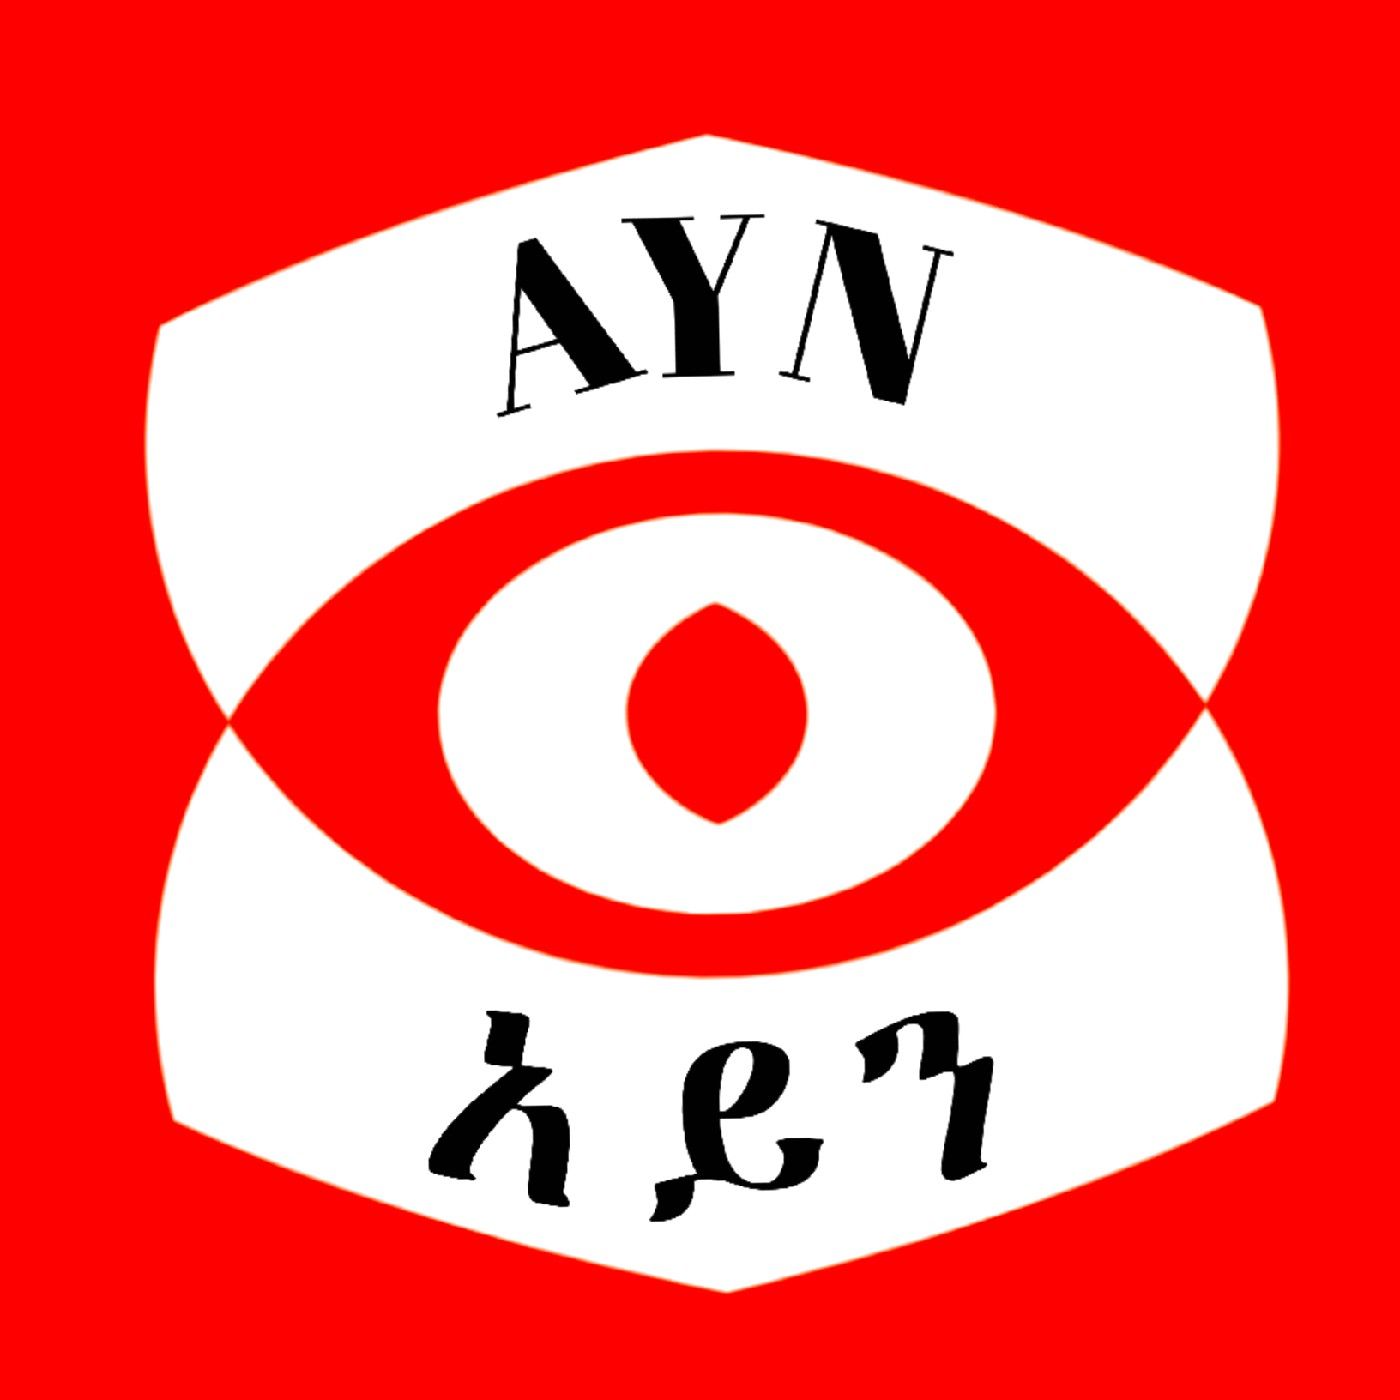 Ayn media podcast:Ayn Media